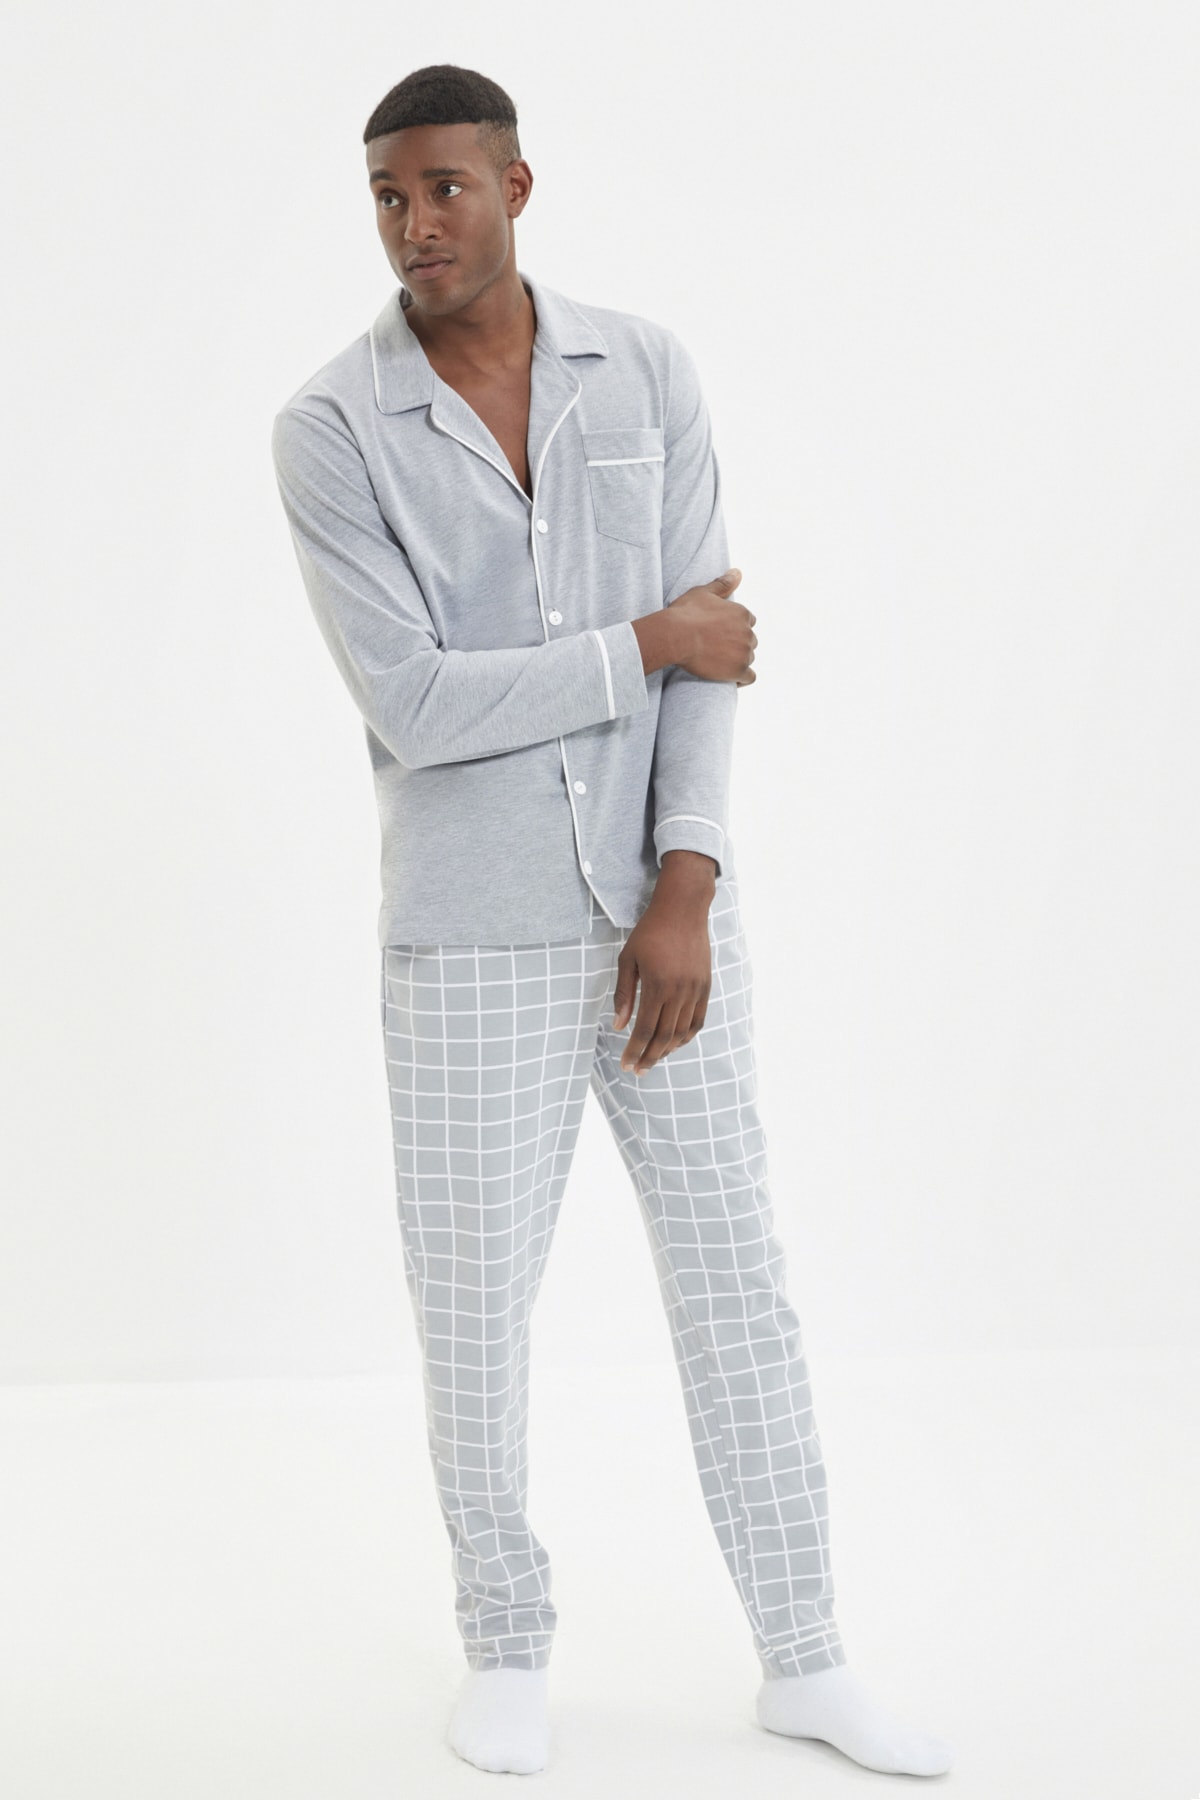 Trendyol Men's Gray Regular Fit Top Bib Detailed Knitted Pajamas Set.